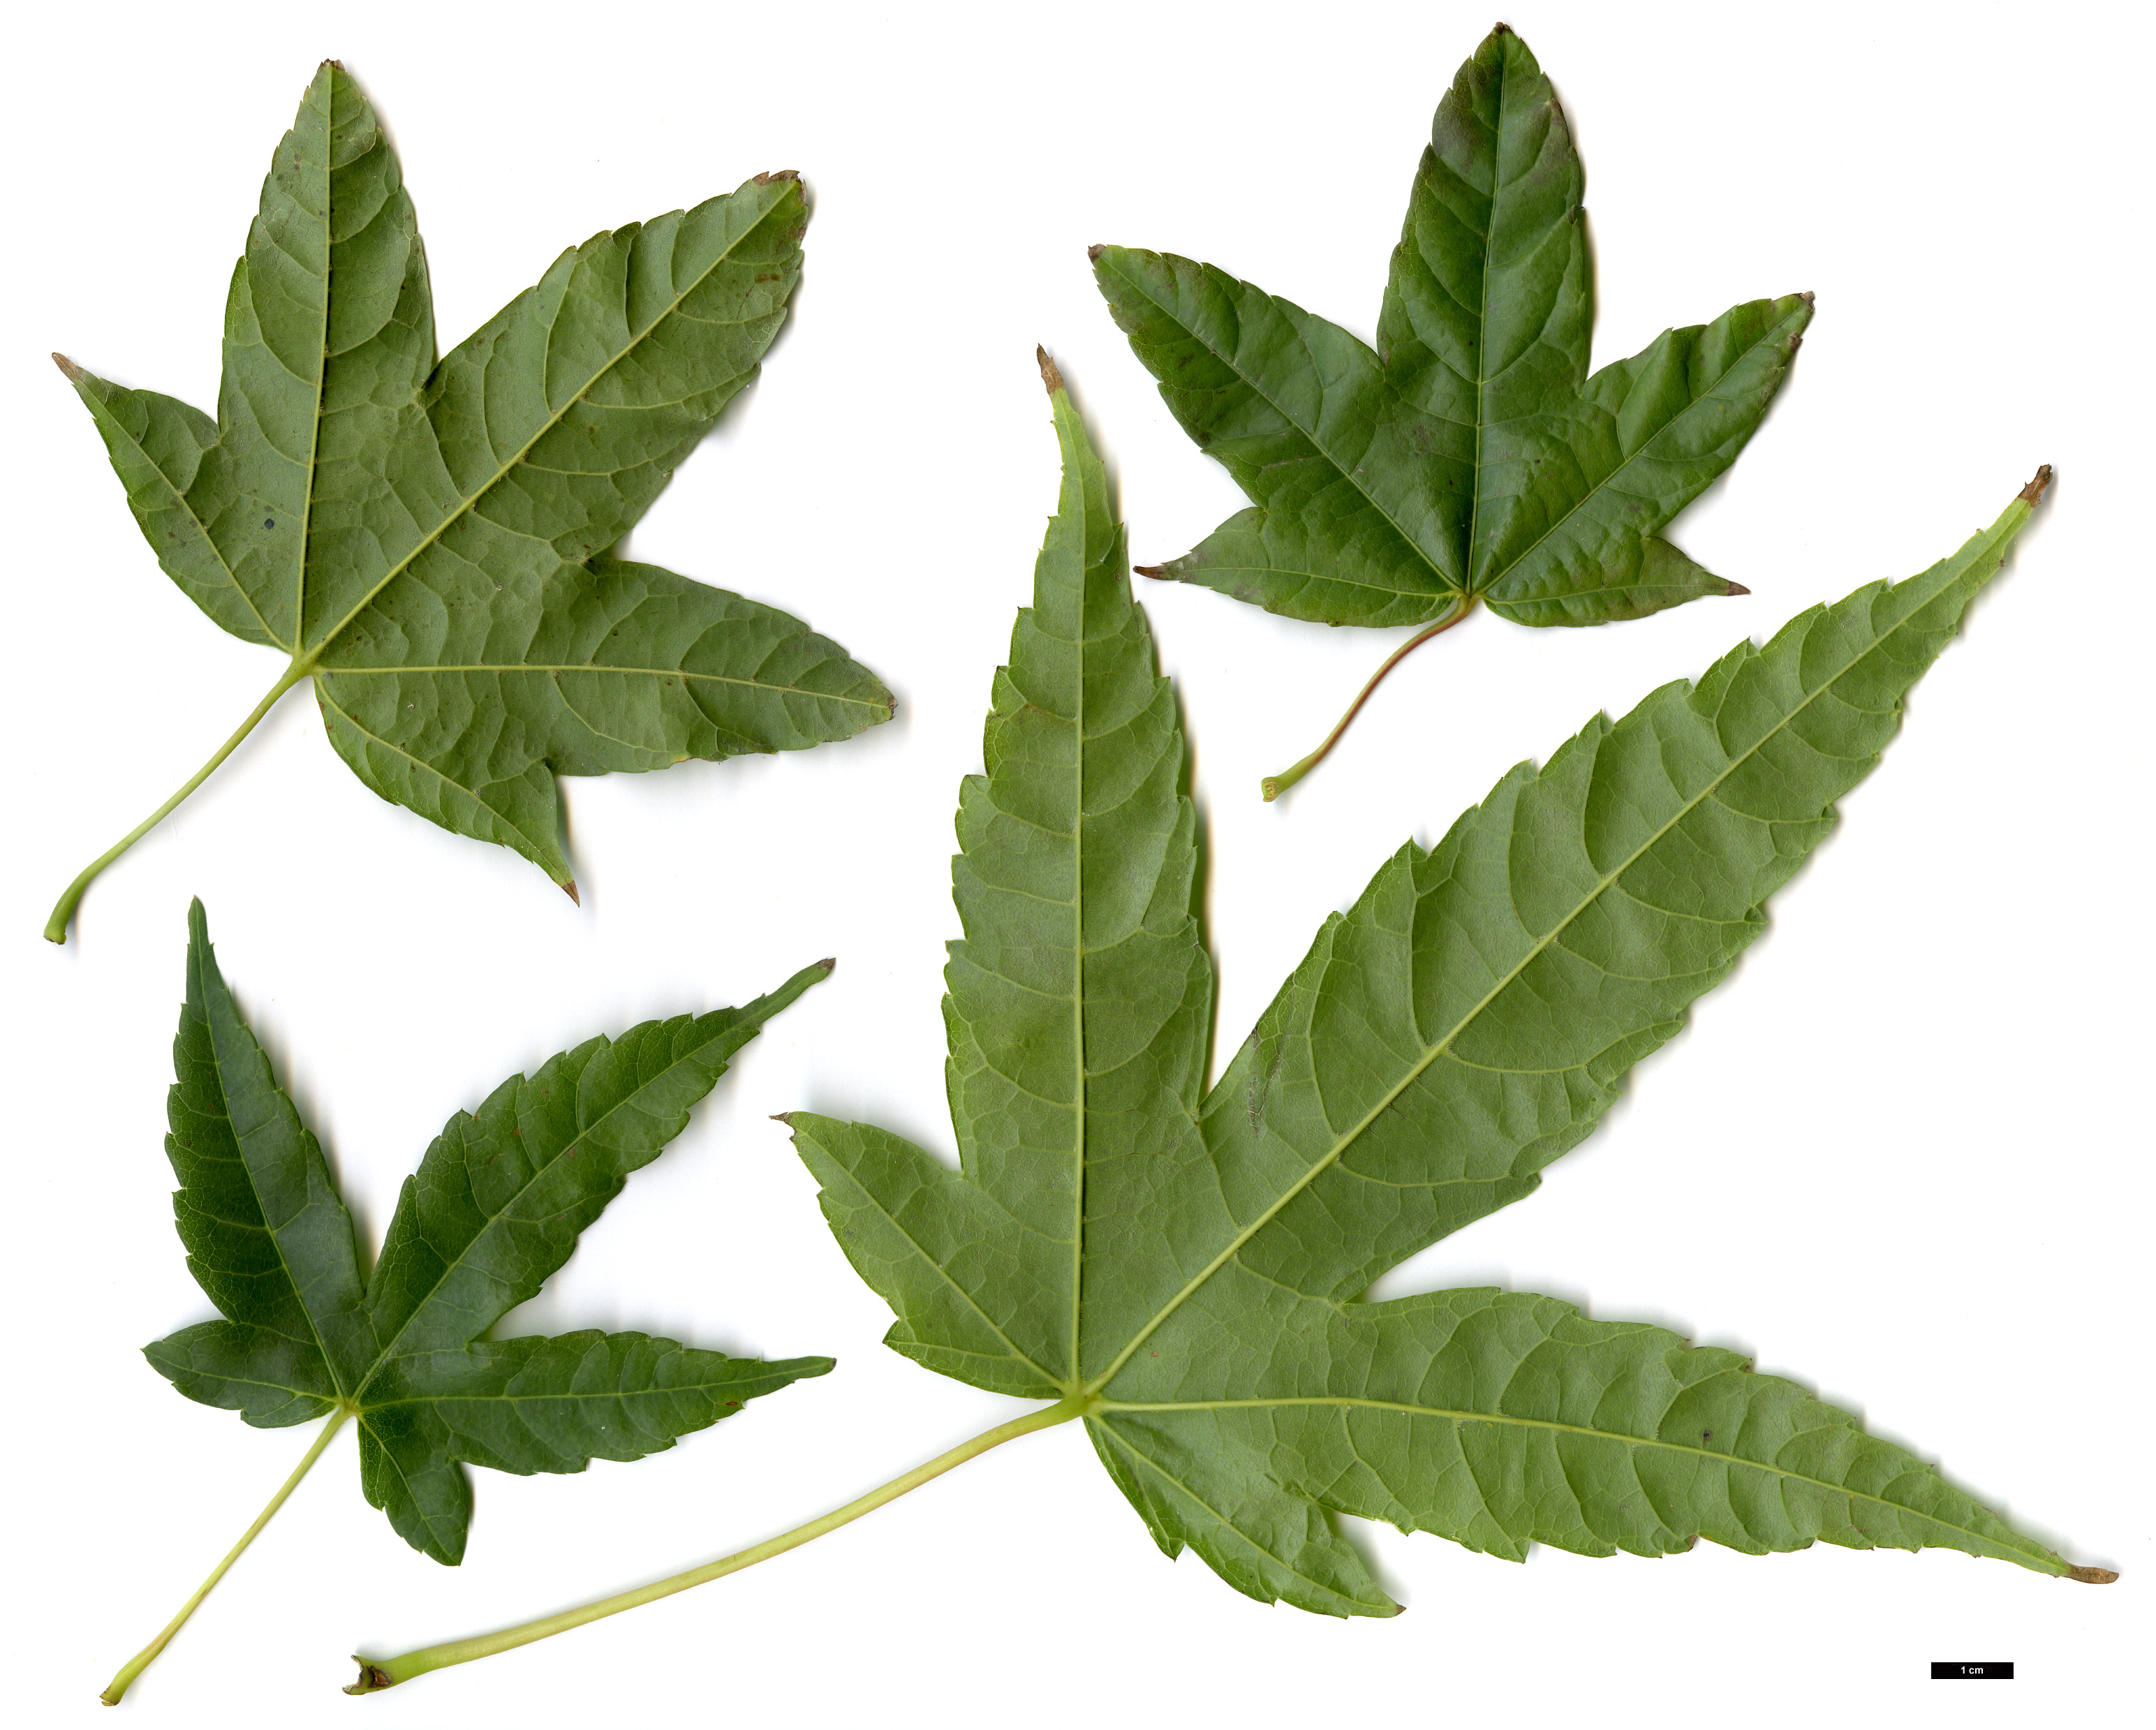 High resolution image: Family: Sapindaceae - Genus: Acer - Taxon: elegantulum